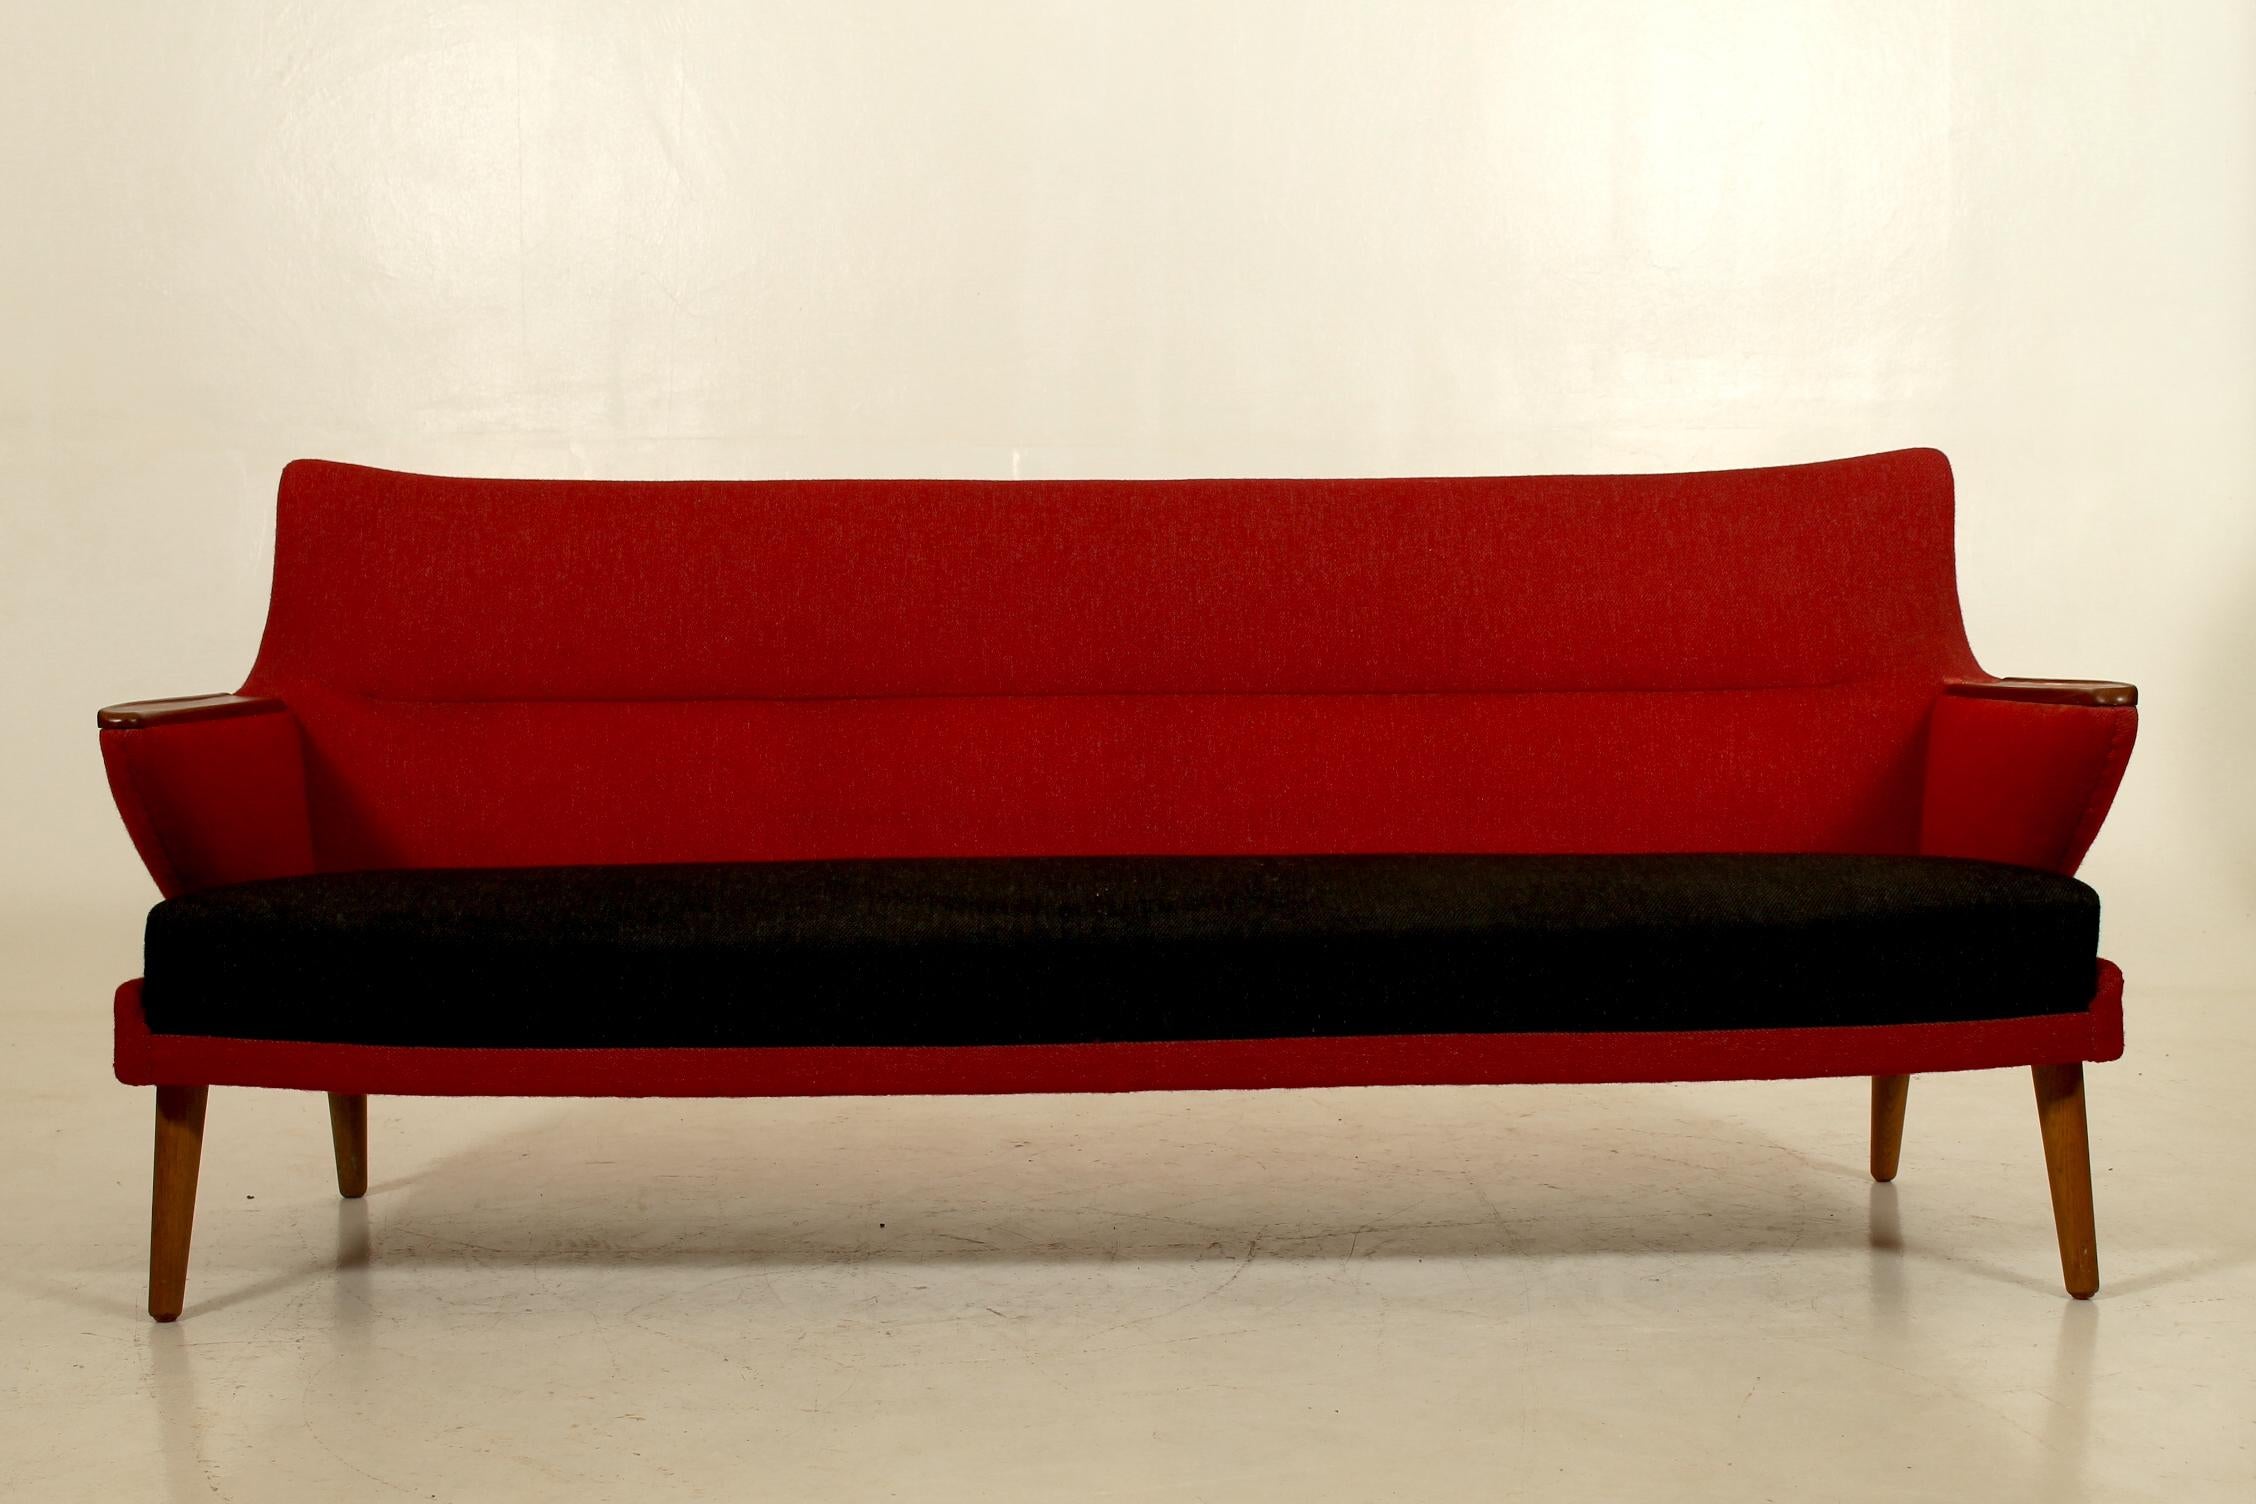 Ce magnifique canapé est un précurseur de l'approche belle et minimaliste des années 50 en matière de design. Les lignes épurées et la légèreté du canapé sont associées à une qualité incroyable et à un savoir-faire professionnel.
Conçu par Kurt